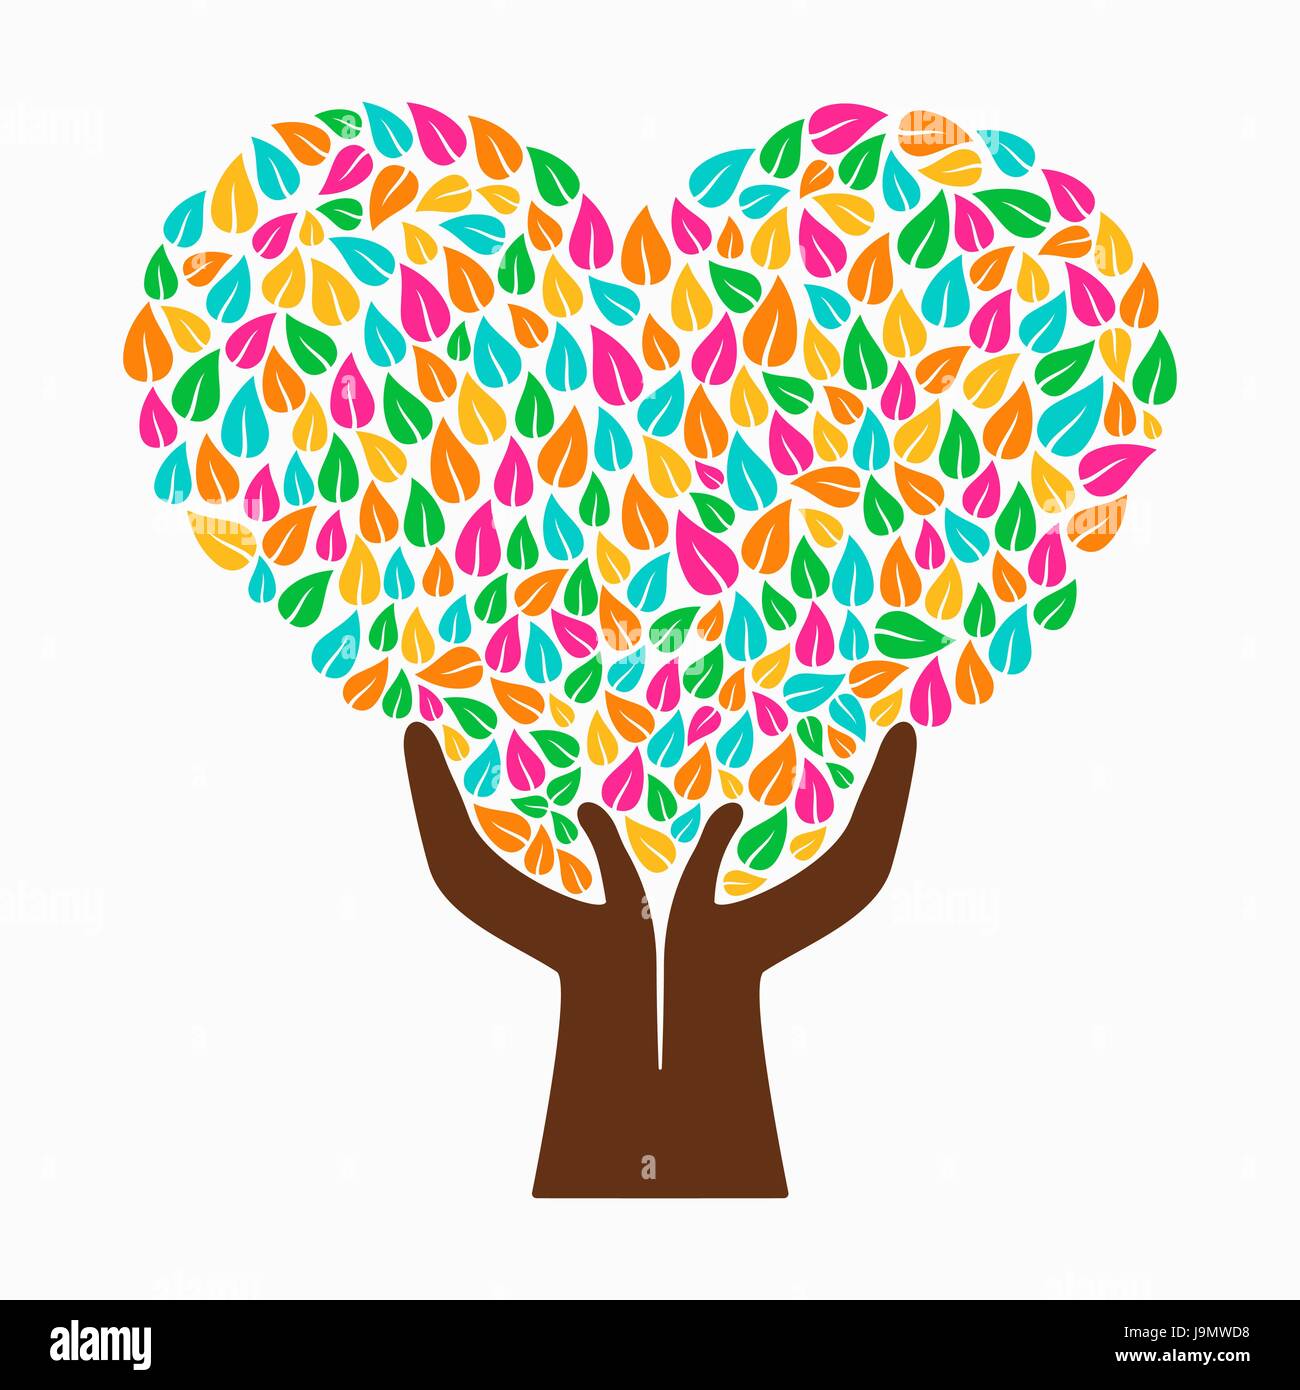 Symbole de l'arbre d'amour avec des mains et les feuilles multicolores. Concept illustration pour aider à l'organisation du projet, l'environnement ou de travail social. Vecteur EPS10. Illustration de Vecteur